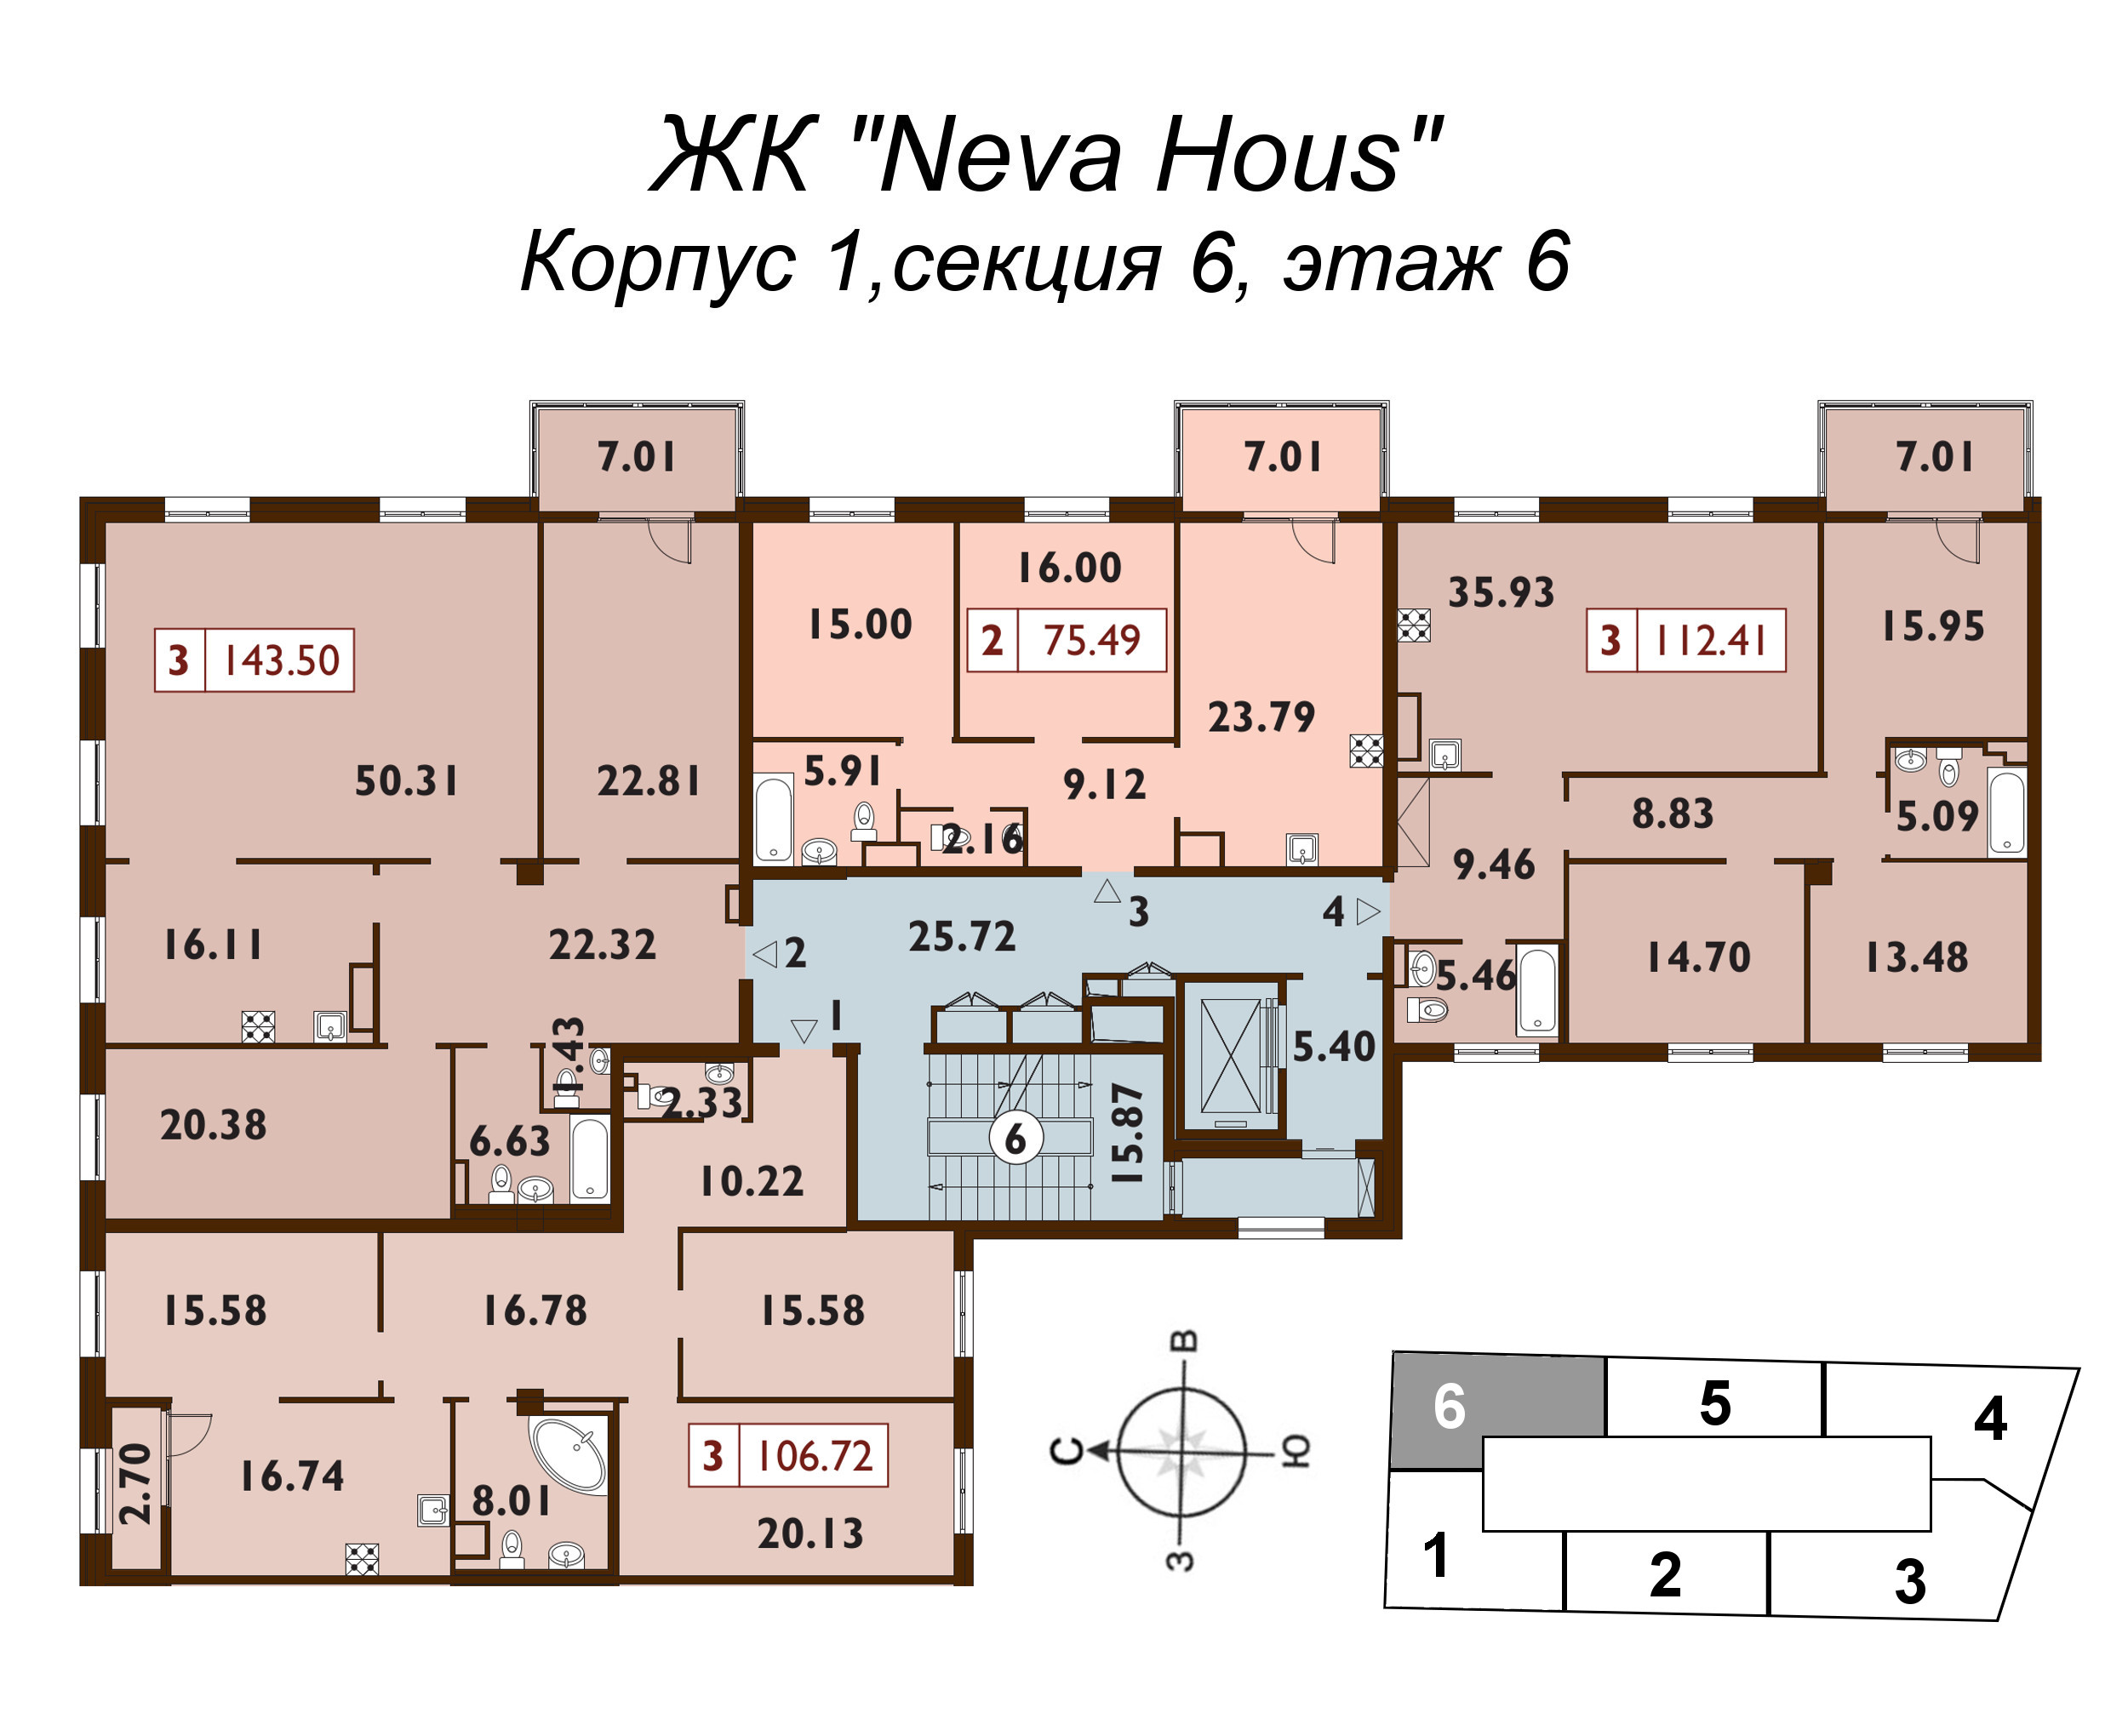 4-комнатная (Евро) квартира, 112.5 м² в ЖК "Neva Haus" - планировка этажа